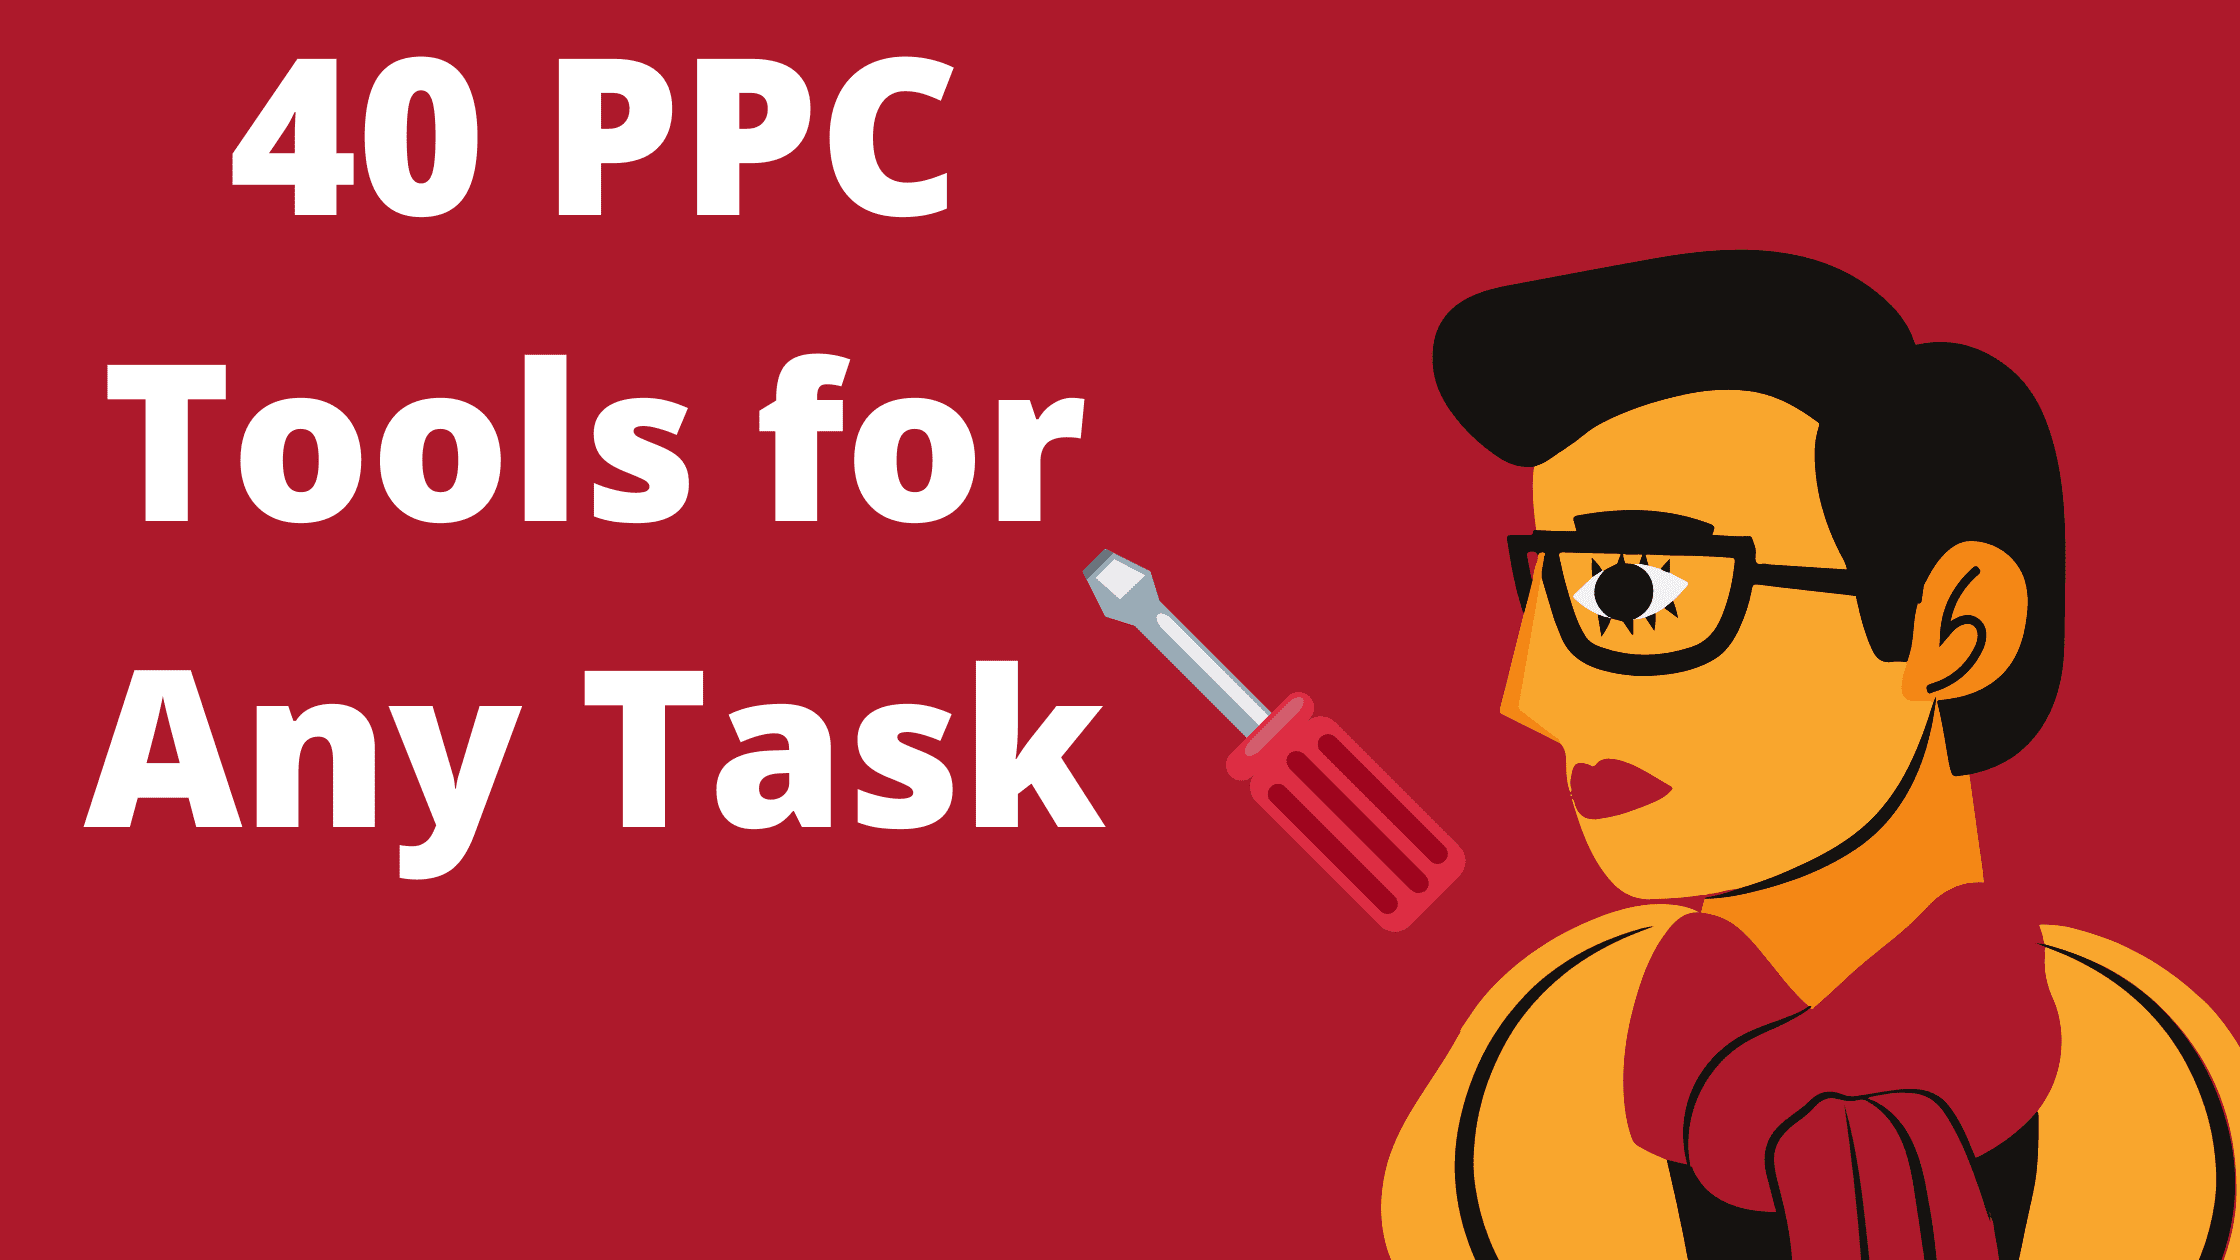 PPC Tools